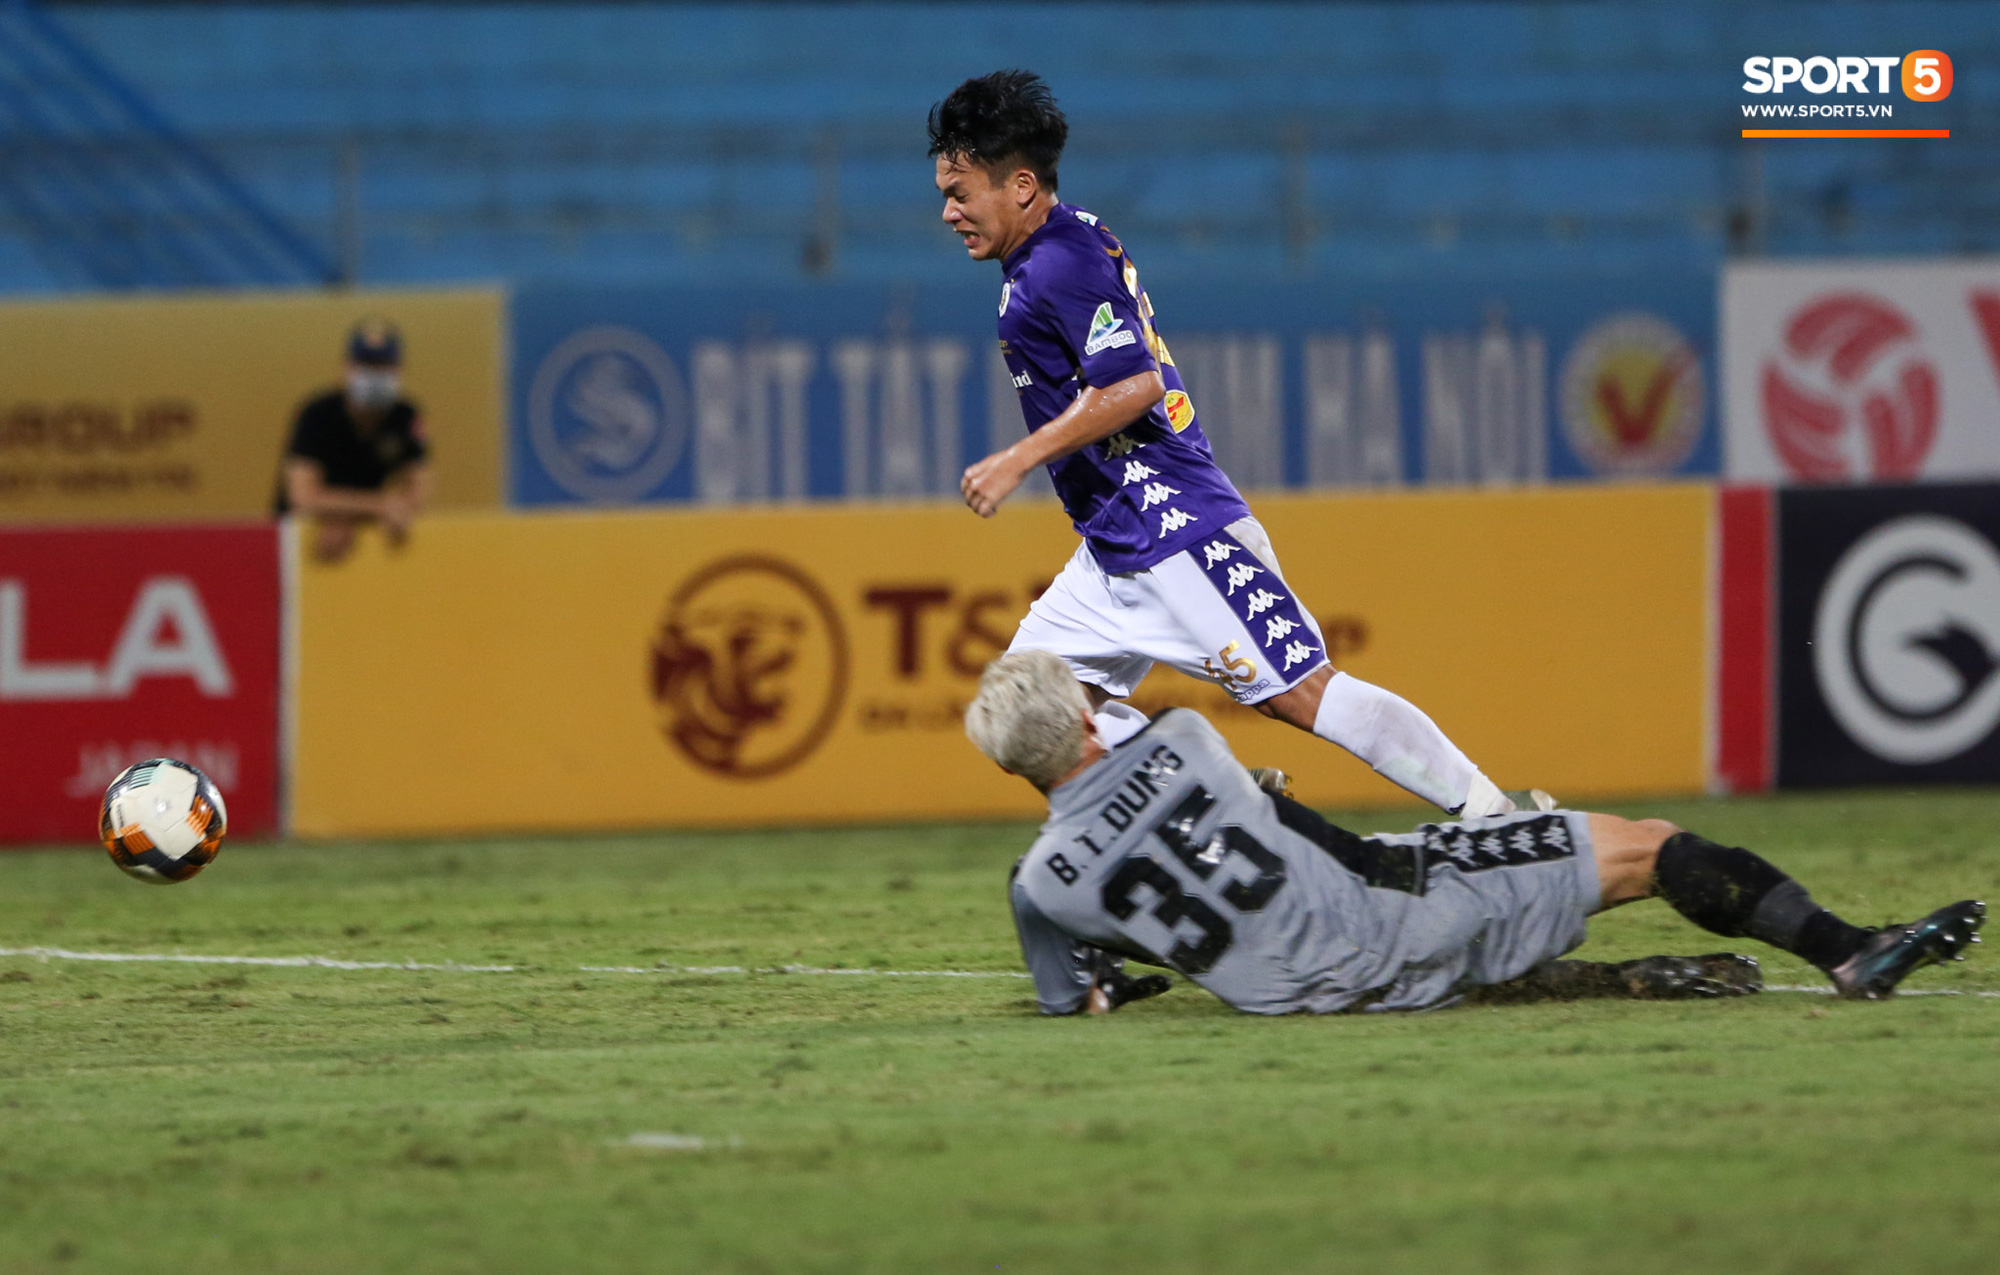 Bùi Tiến Dũng xử lý khiến cầu thủ Hà Nội FC tẽn tò nhưng không che lấp nổi ngày thảm hoạ - Ảnh 6.